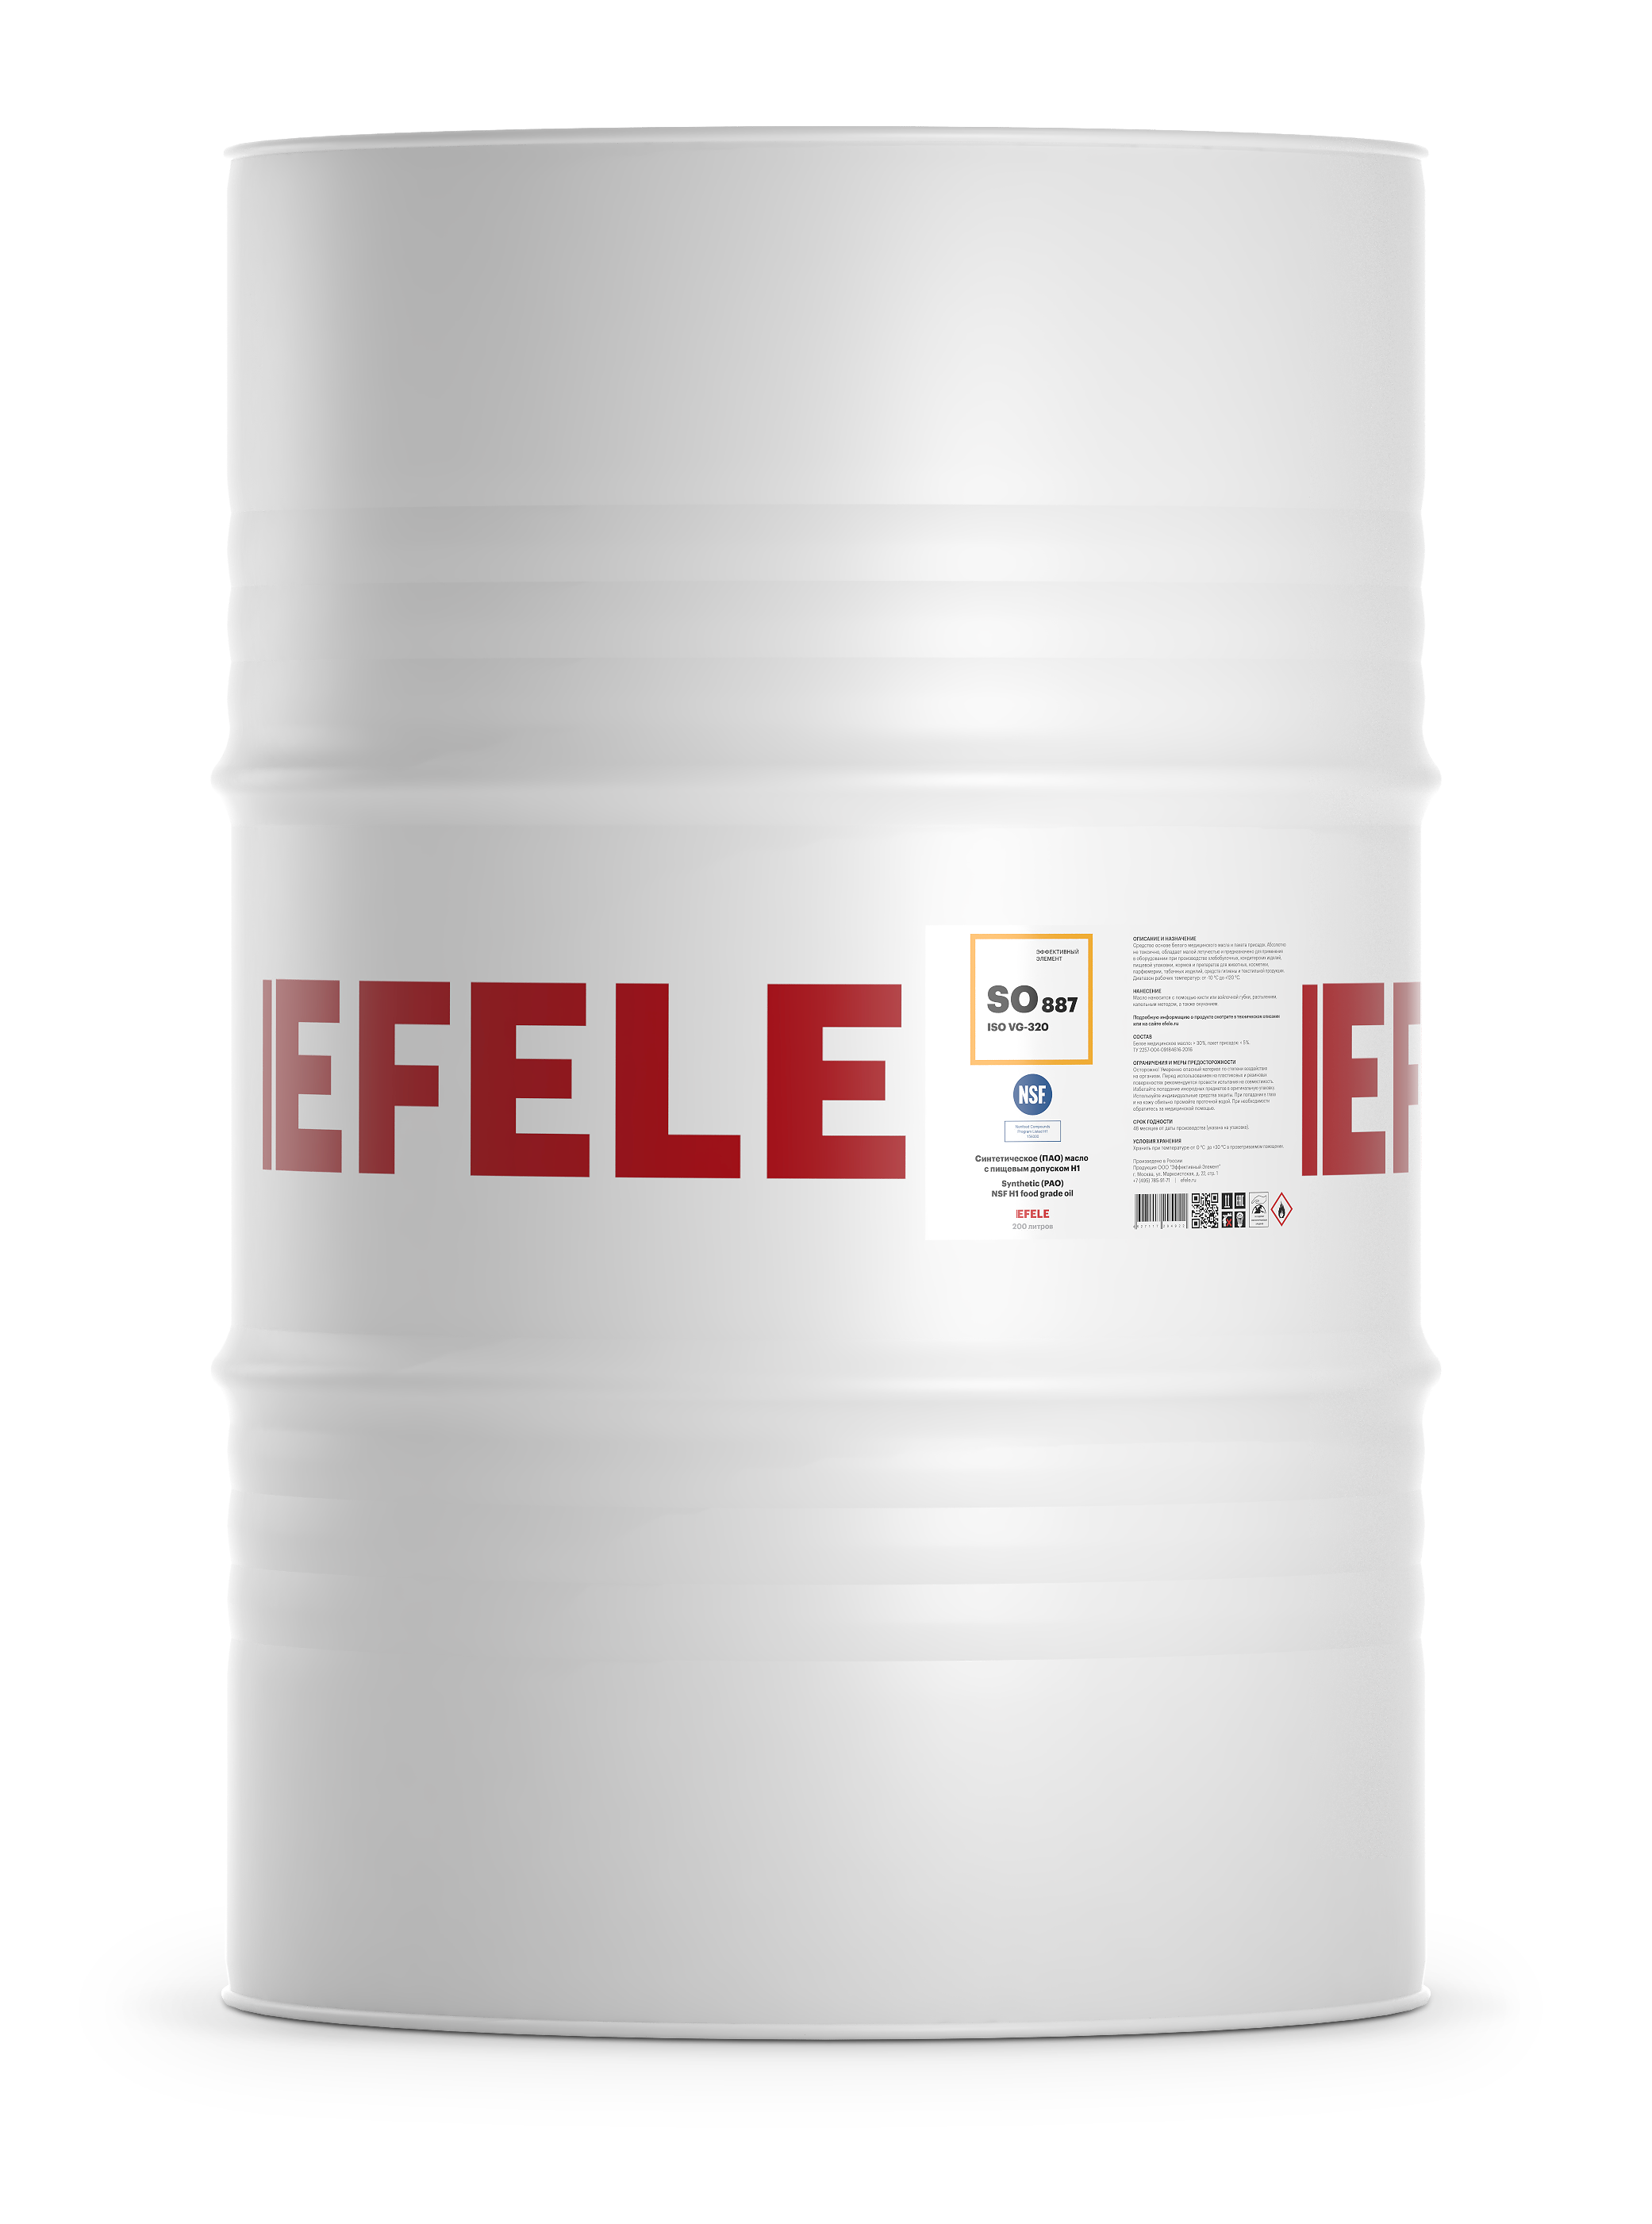 Синтетическое (ПАО) масло с пищевым допуском NSF H1 EFELE SO-887 VG-320 (бочка 200 л)